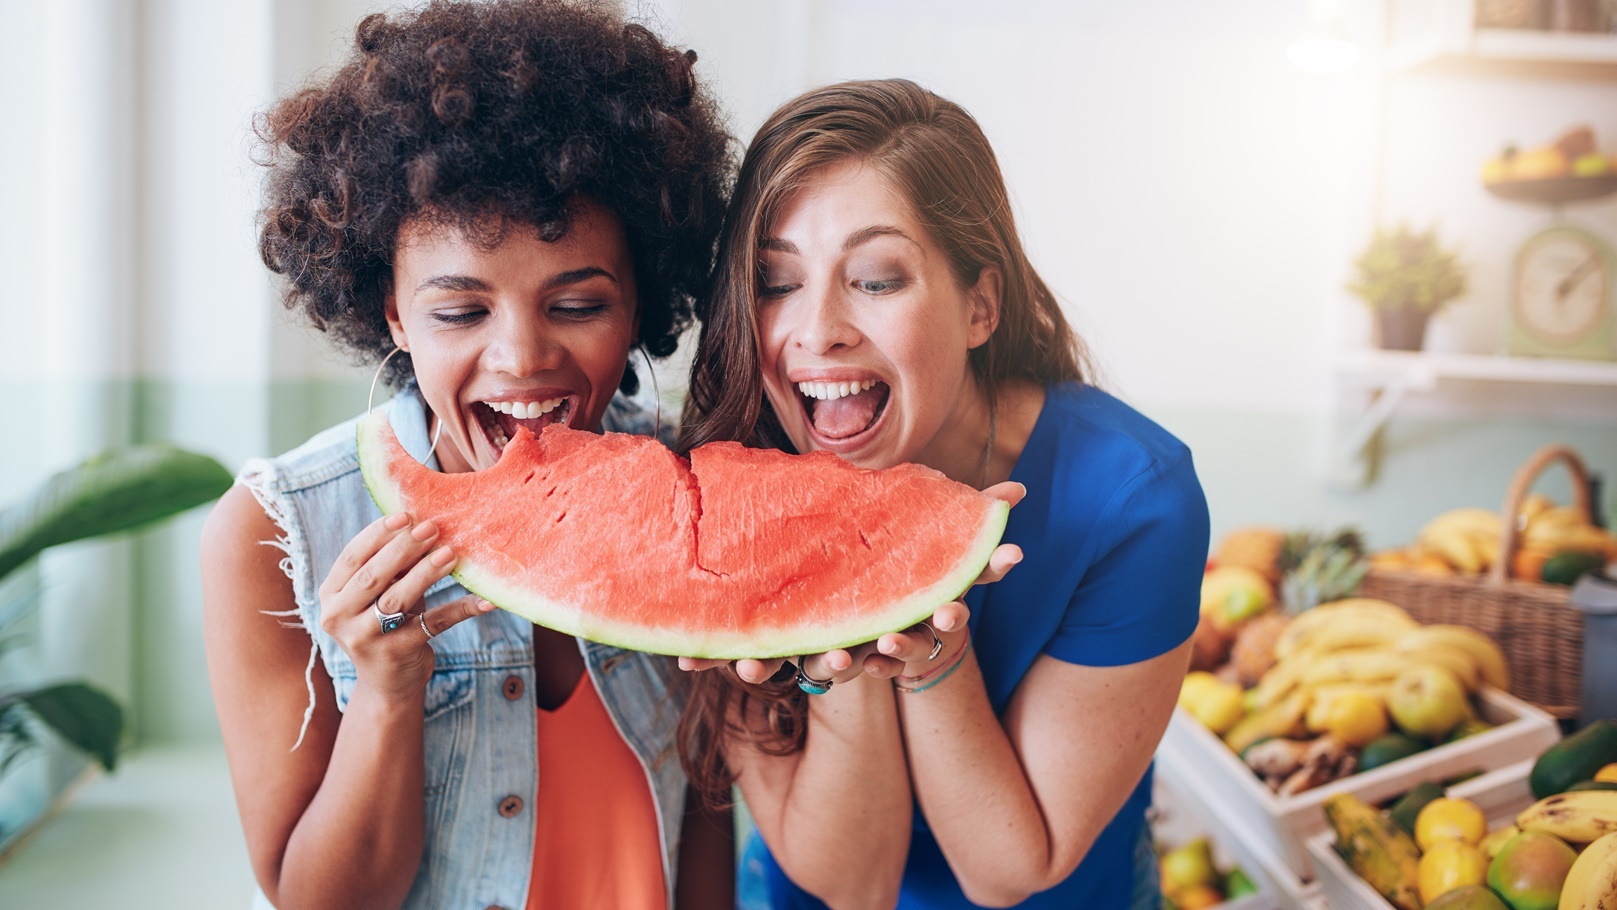 two-women-taking-a-bite-of-a-watermelon-2021-08-26-19-58-15-utc